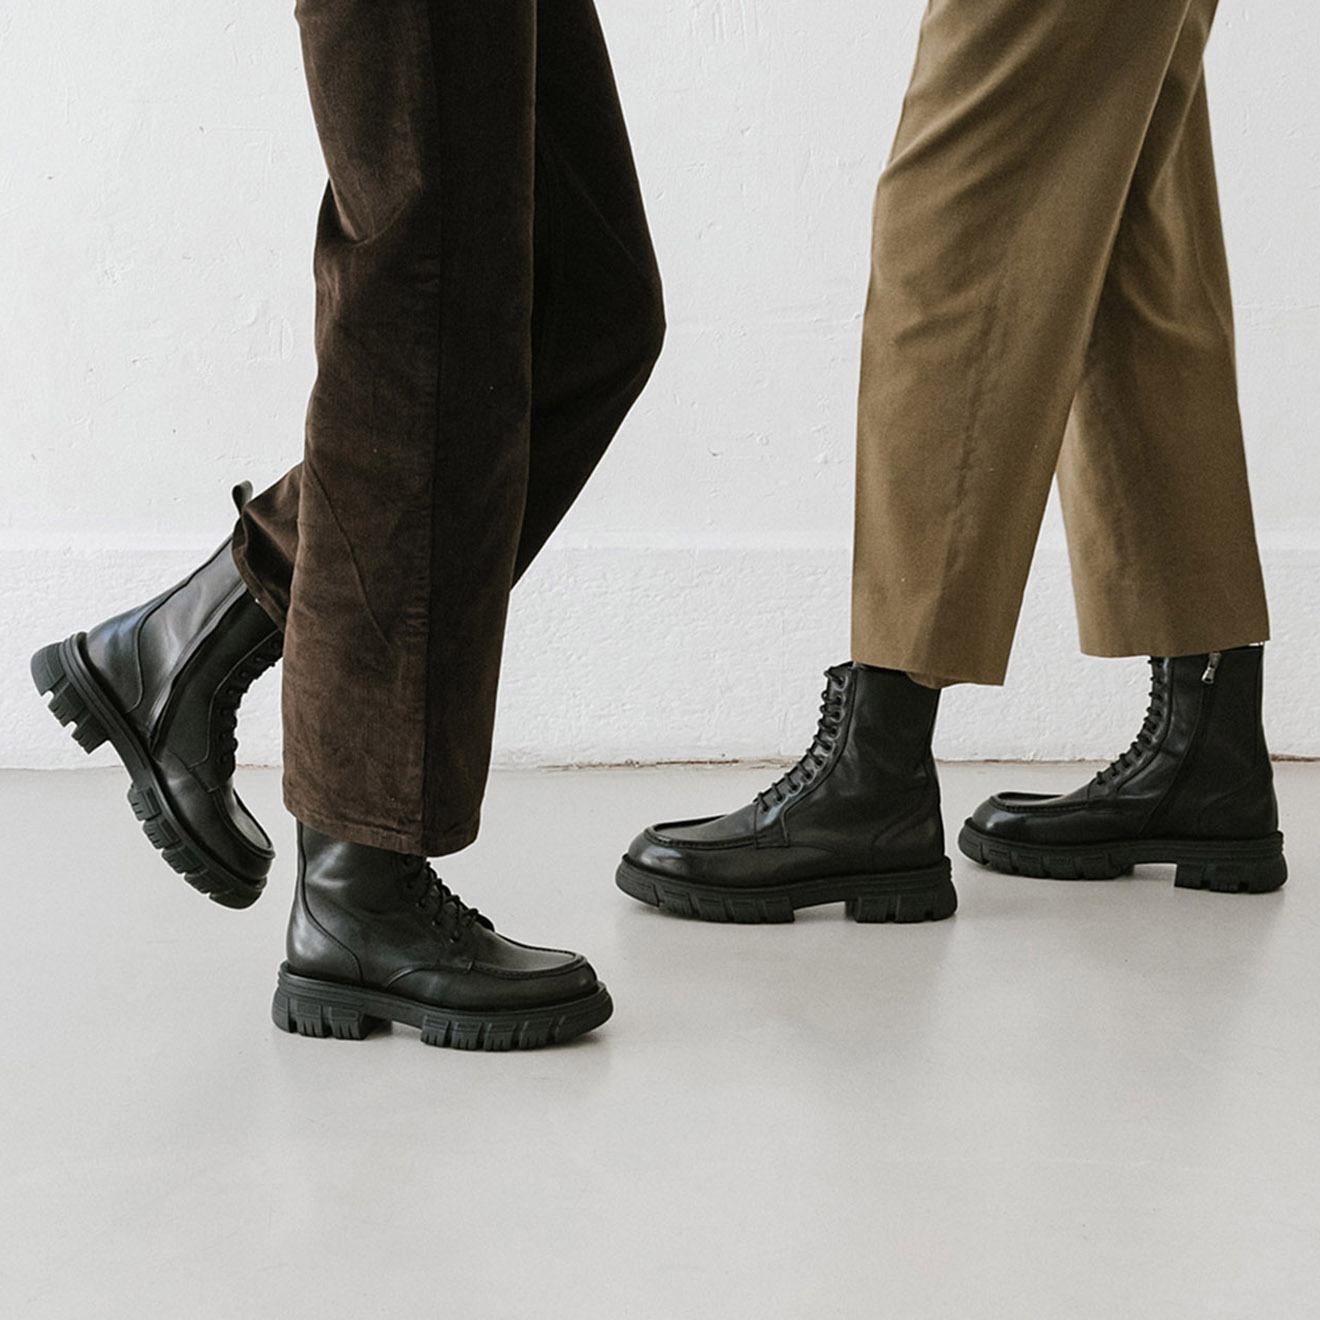 jonak - boots en cuir rumilo noires - talon 4.5 cm